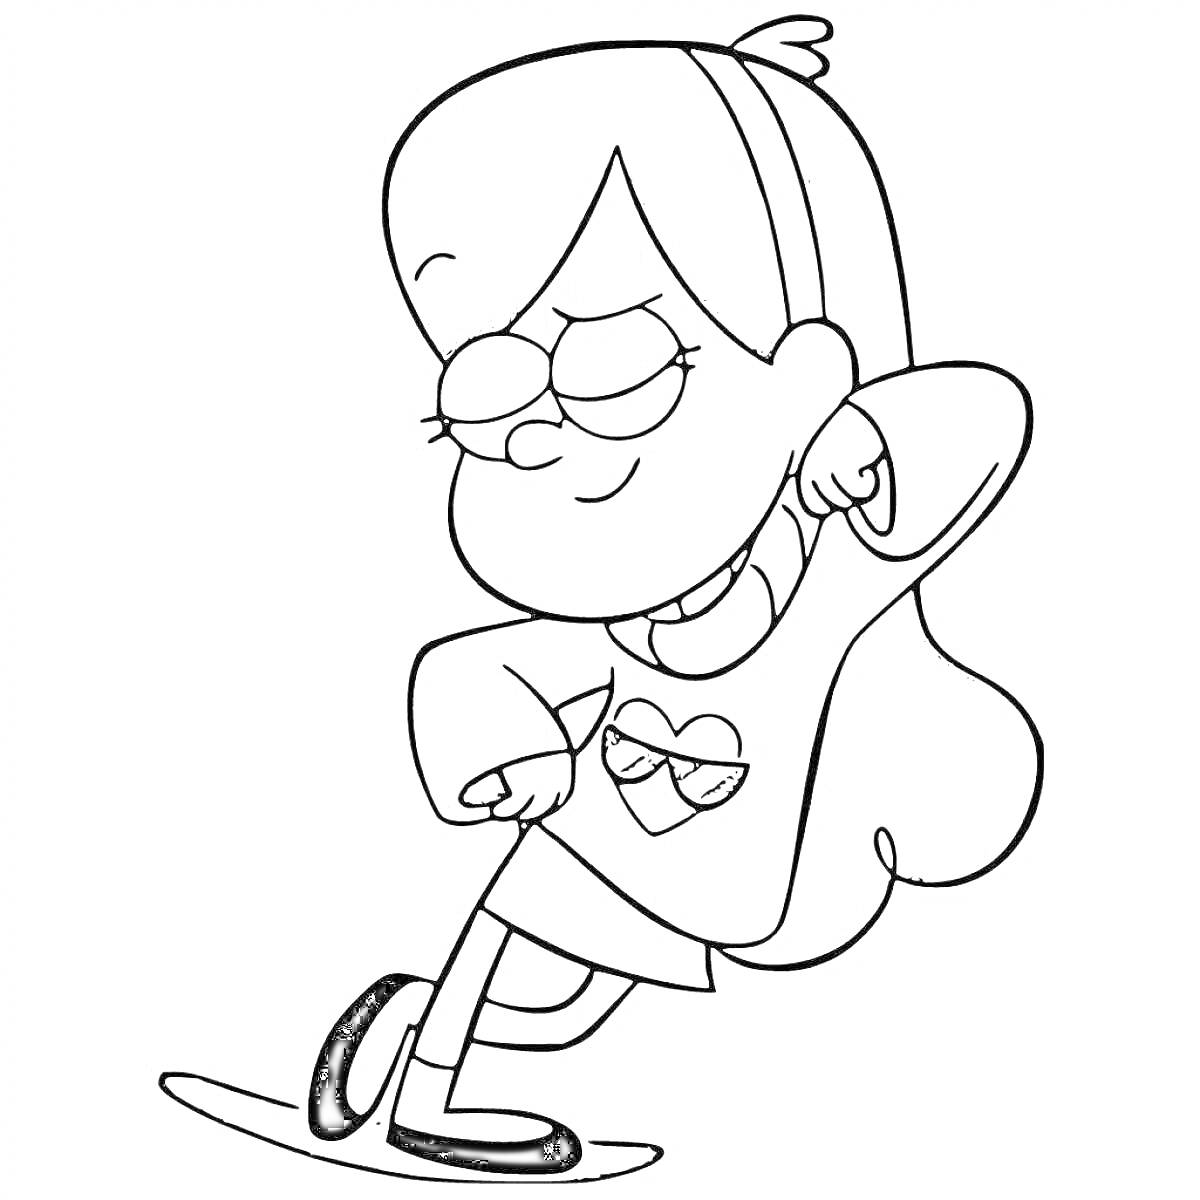 Раскраска Девочка Мейбл с длинными волосами, прыгает в платье с сердцем, повязка на голове